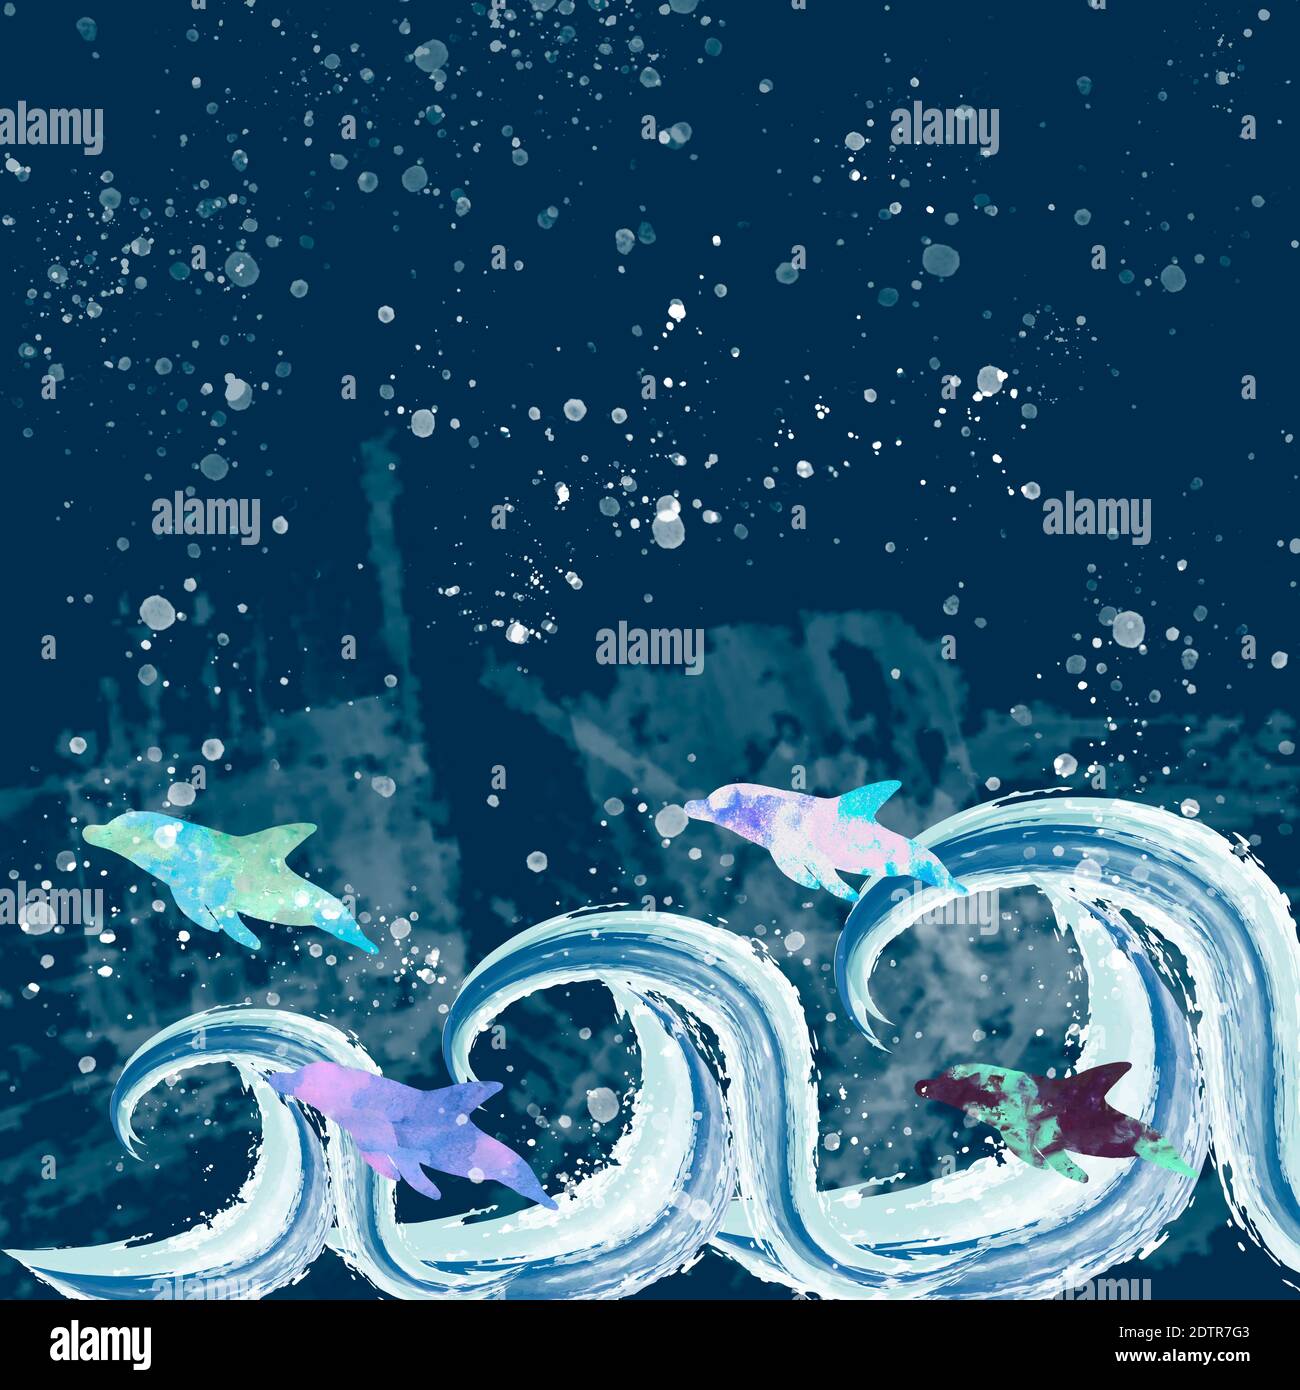 Dauphins dans la mer de nuit. Dauphin d'aquarelle et vagues. Illustration dessinée à la main. Dessin abstrait animaux de mer. Élément art pour la conception. Banque D'Images